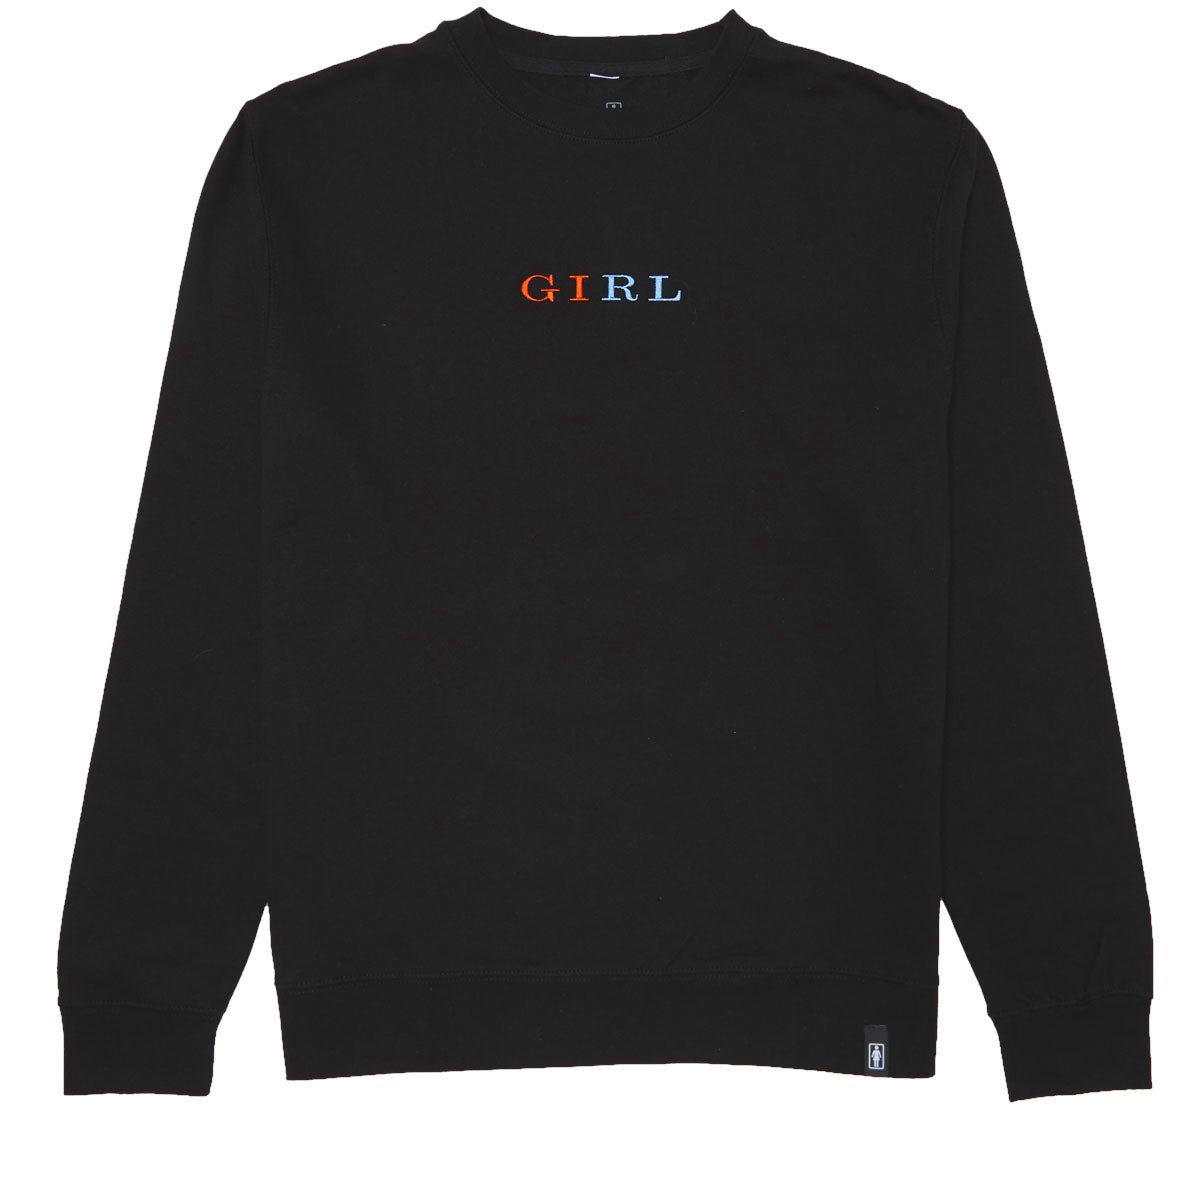 Girl Serif Crew Neck Fleece Sweatshirt - Black image 1